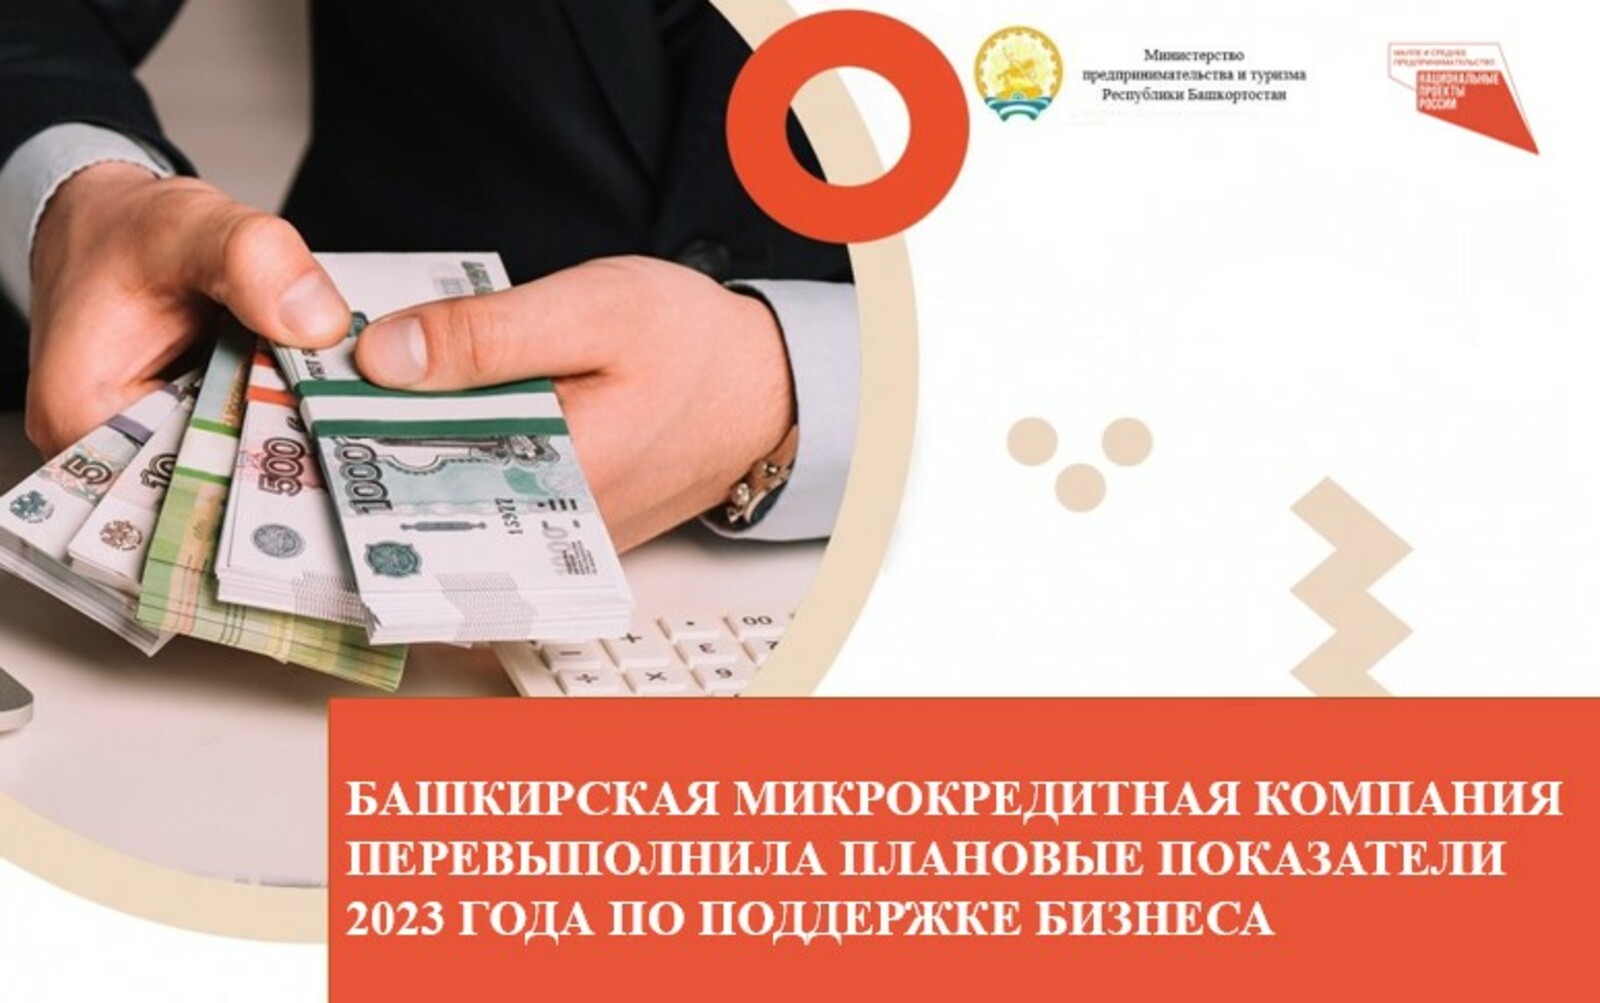 Башкирская микрокредитная компания перевыполнила плановые показатели 2023 года по поддержке бизнеса